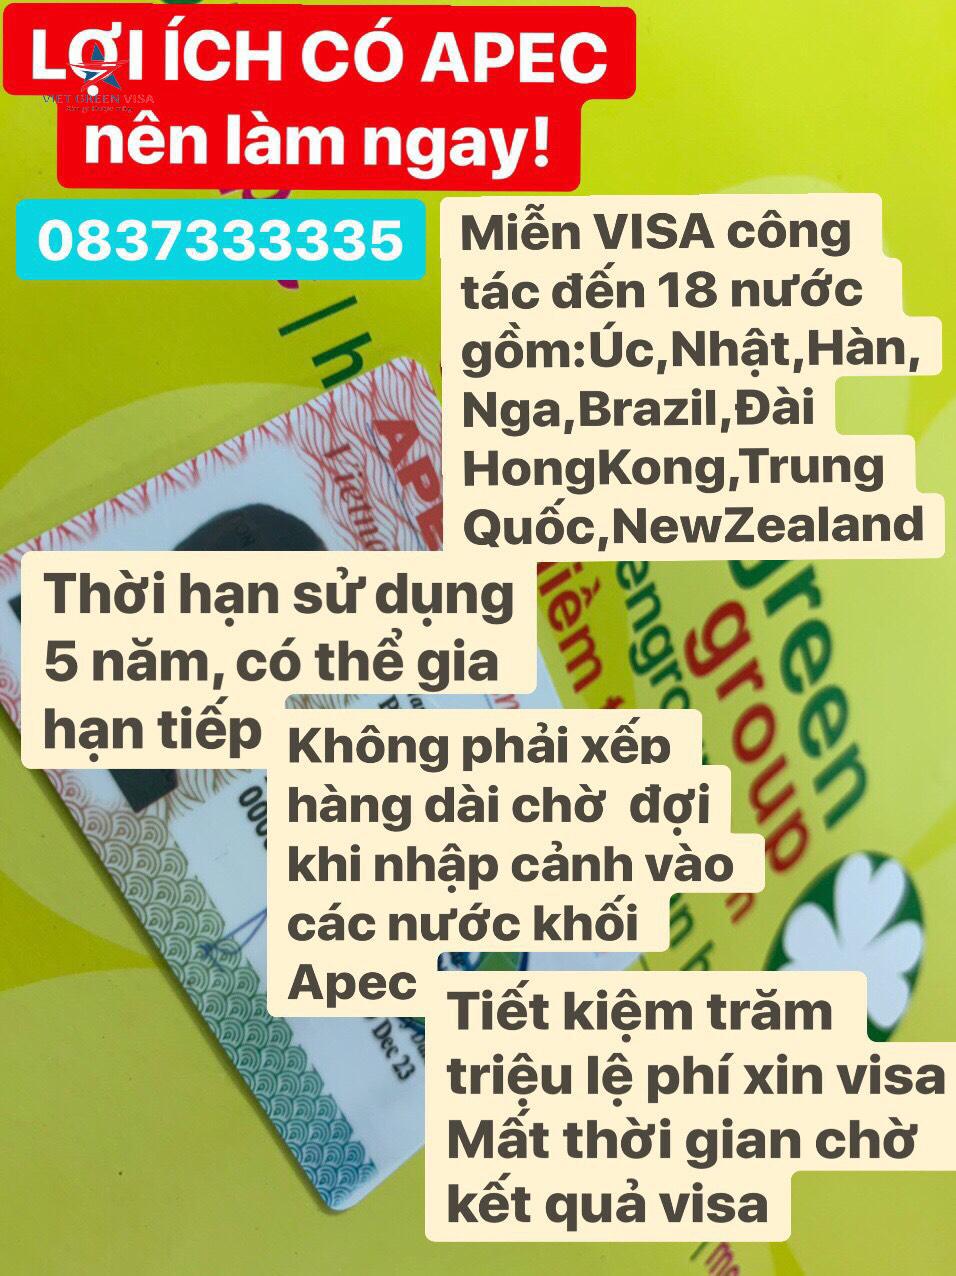 Dịch vụ làm thẻ Apec tại Gia Lai, tư vấn thẻ Apec, thẻ apec, Gia Lai, Viet Green Visa, Làm thẻ Apec Gia Lai uy tín